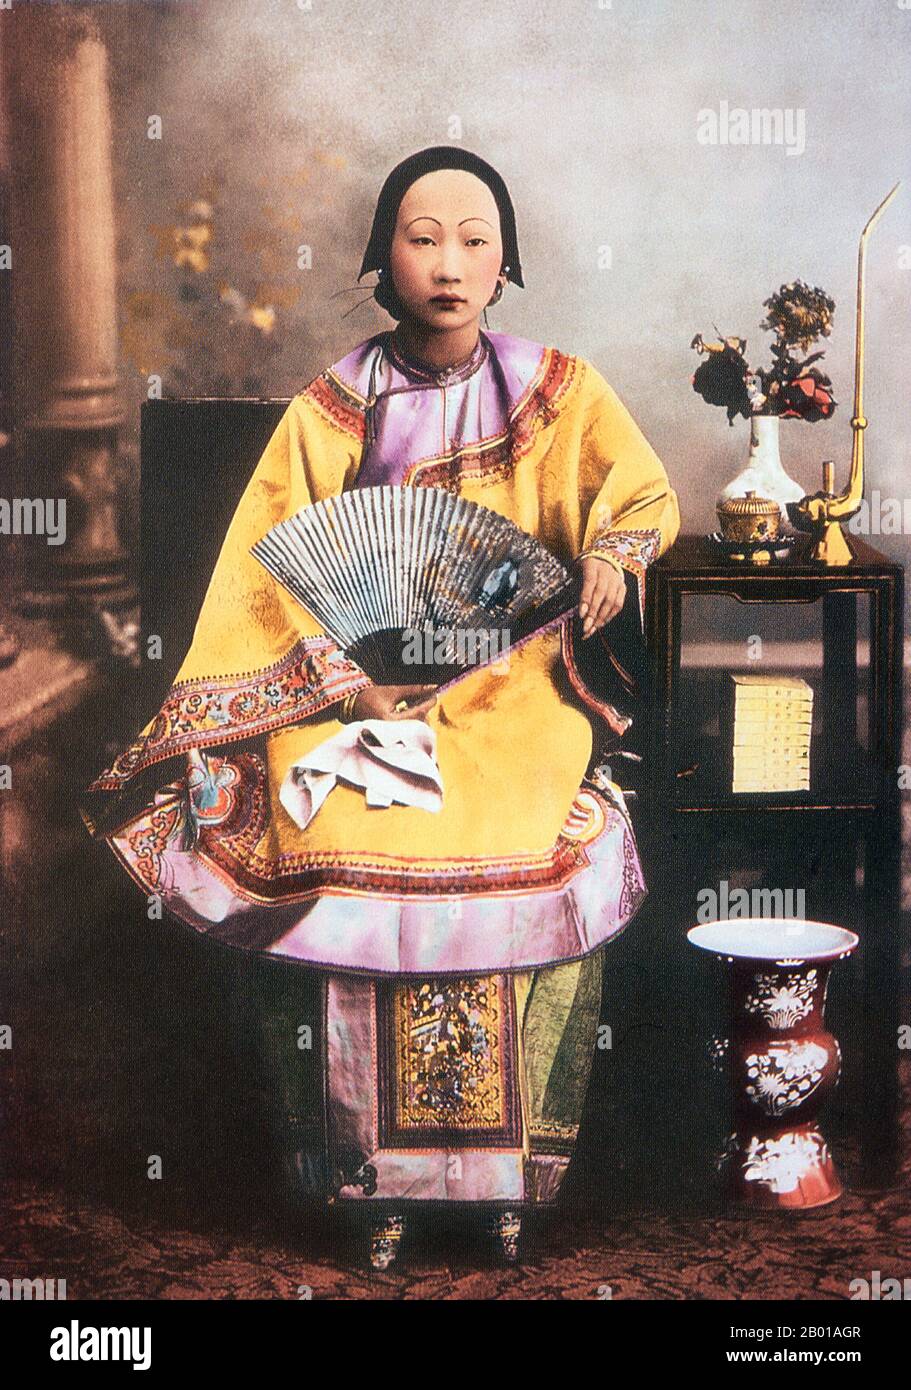 China: „Eine chinesische Dame von hohem Rang“. Foto von Lai Afong (1839-1890), Hongkong, 1872. Lai Afong war ein Fotograf, der das Afong Studio gründete, das erfolgreichste Fotostudio der späten Qing-Dynastie. Er gilt allgemein als der bedeutendste chinesische Fotograf des 19.. Jahrhunderts. Die Fußbindung (Pinyin: Chanzu, wörtlich „gebundene Füße“) war ein Brauch, der ungefähr tausend Jahre lang in China an jungen Mädchen und Frauen praktiziert wurde und im 10.. Jahrhundert begann und in der ersten Hälfte des 20.. Jahrhunderts endete. Stockfoto